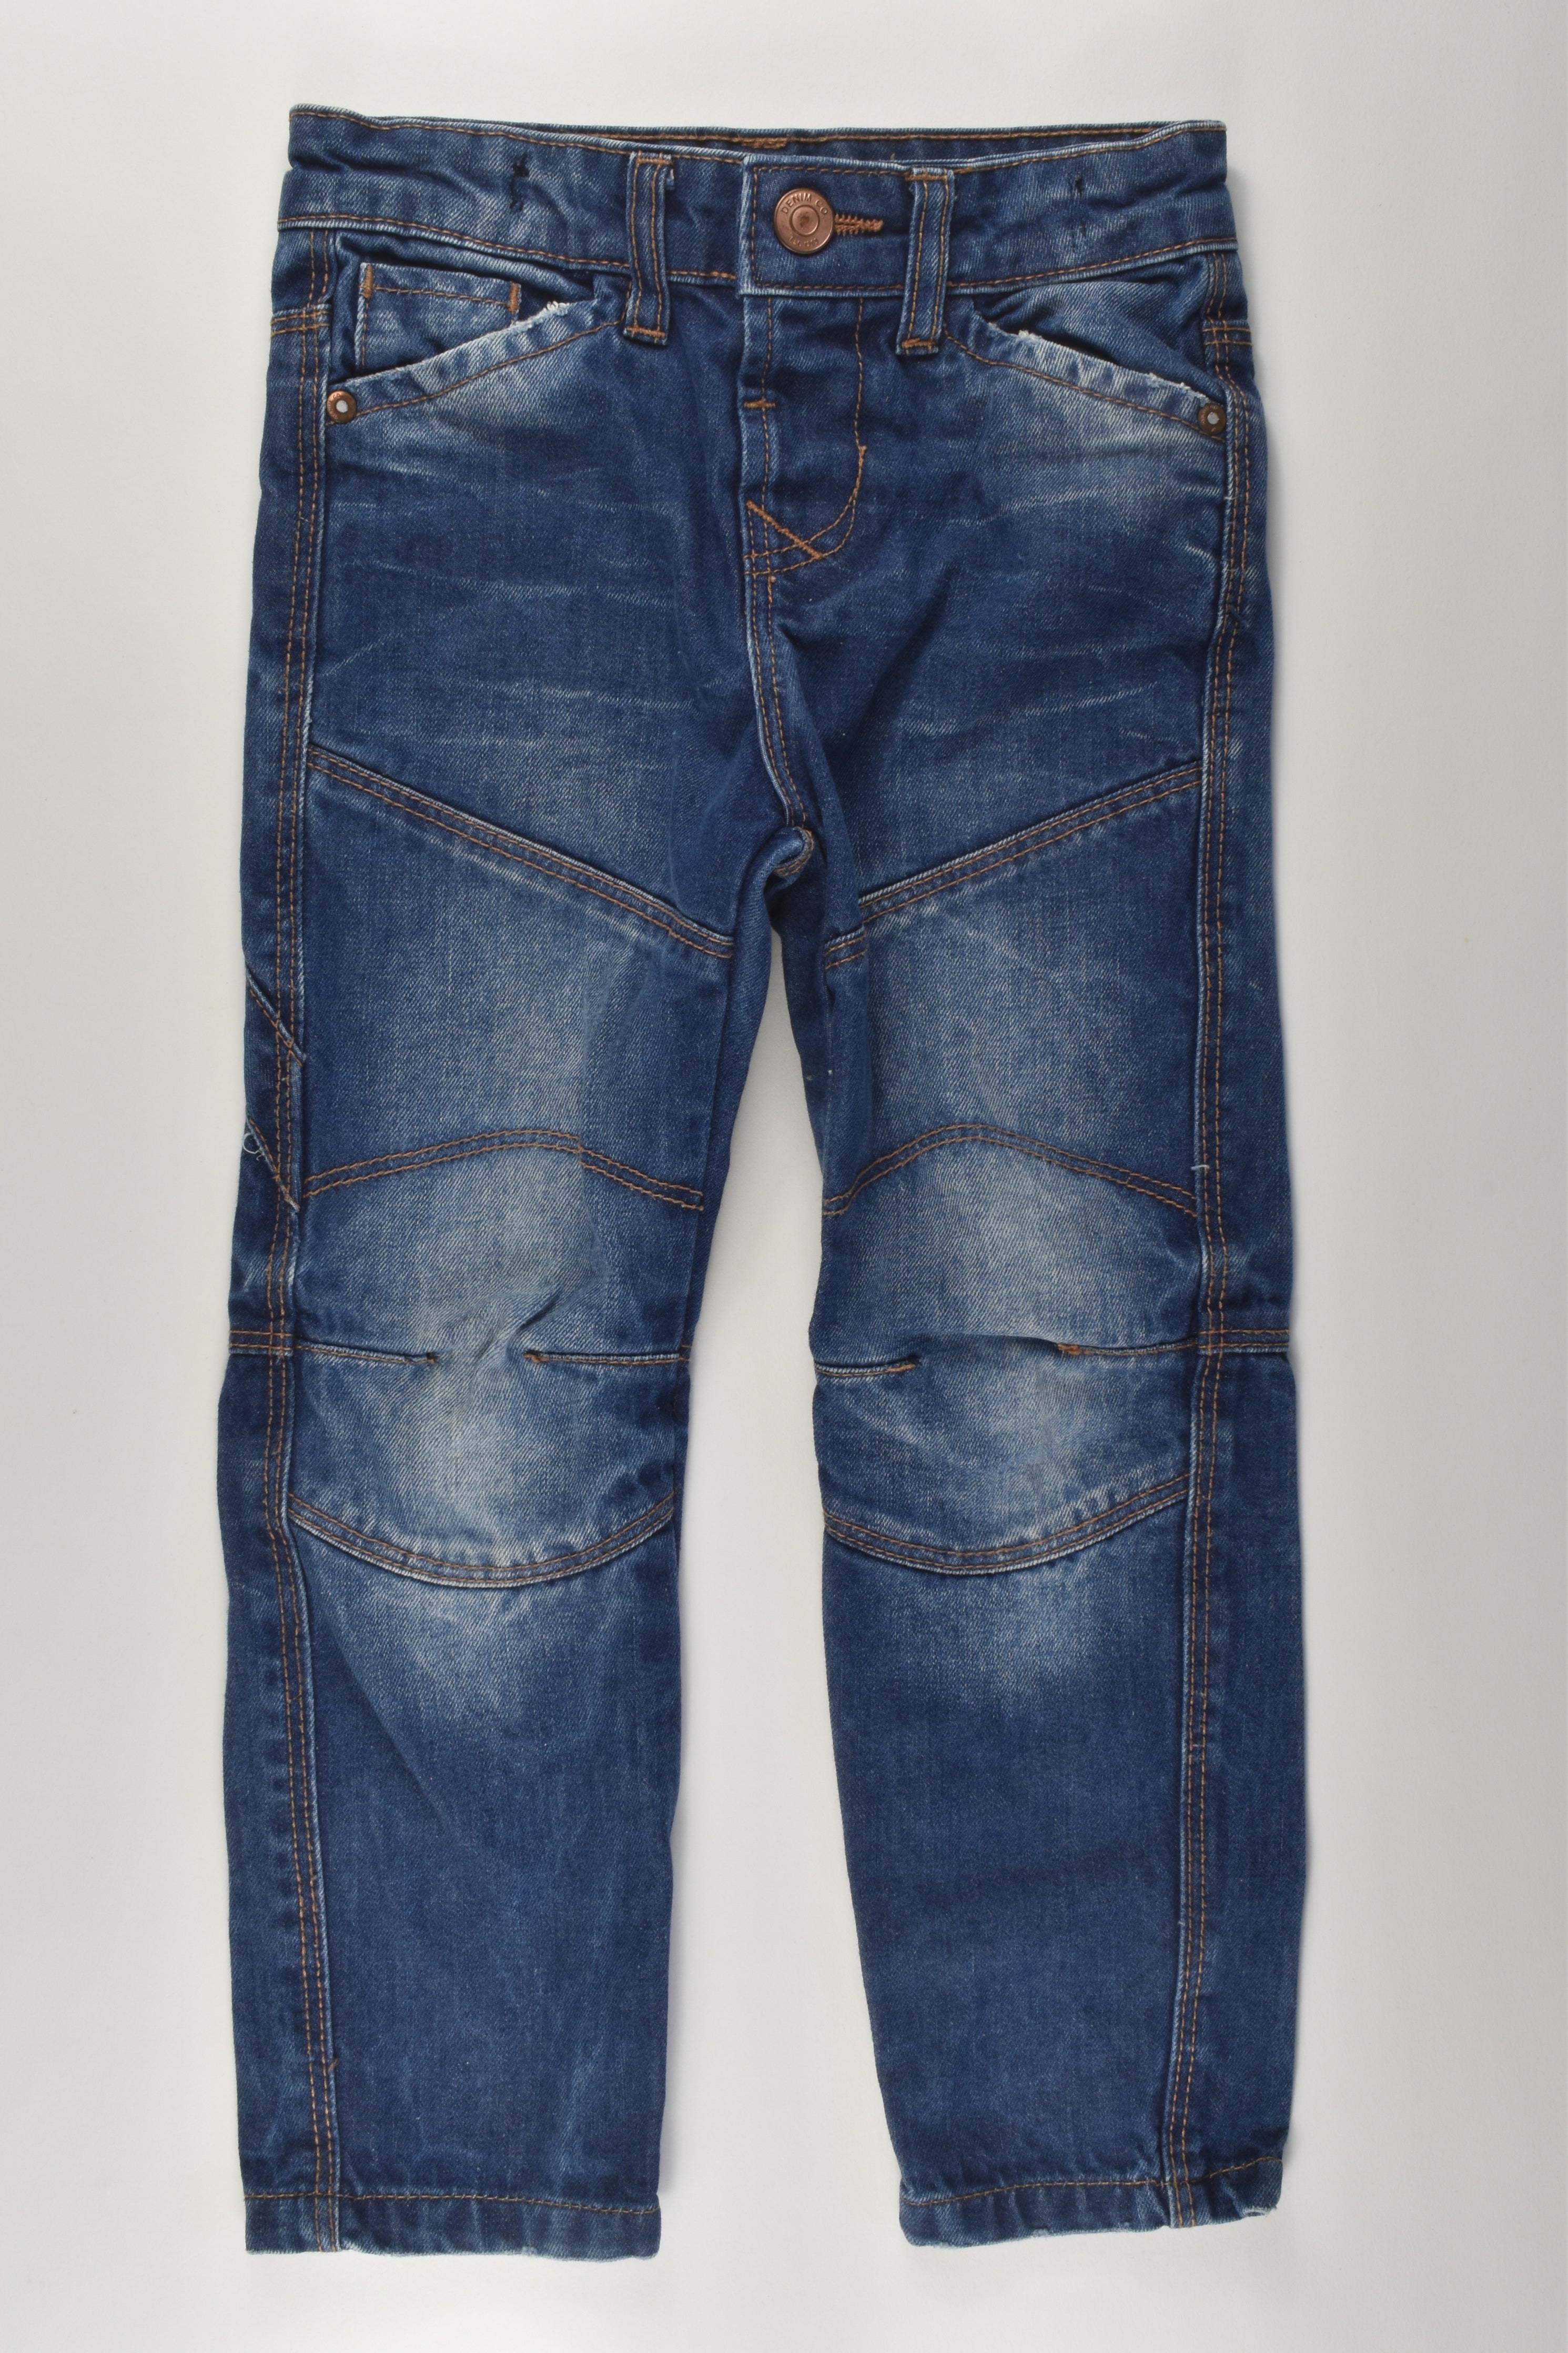 Men's Fashion 2020 Capris Jeans Casual Summer Loose Fit 3/4 Cargo Jeans  Pant Denim Shorts Plus Size | Wish